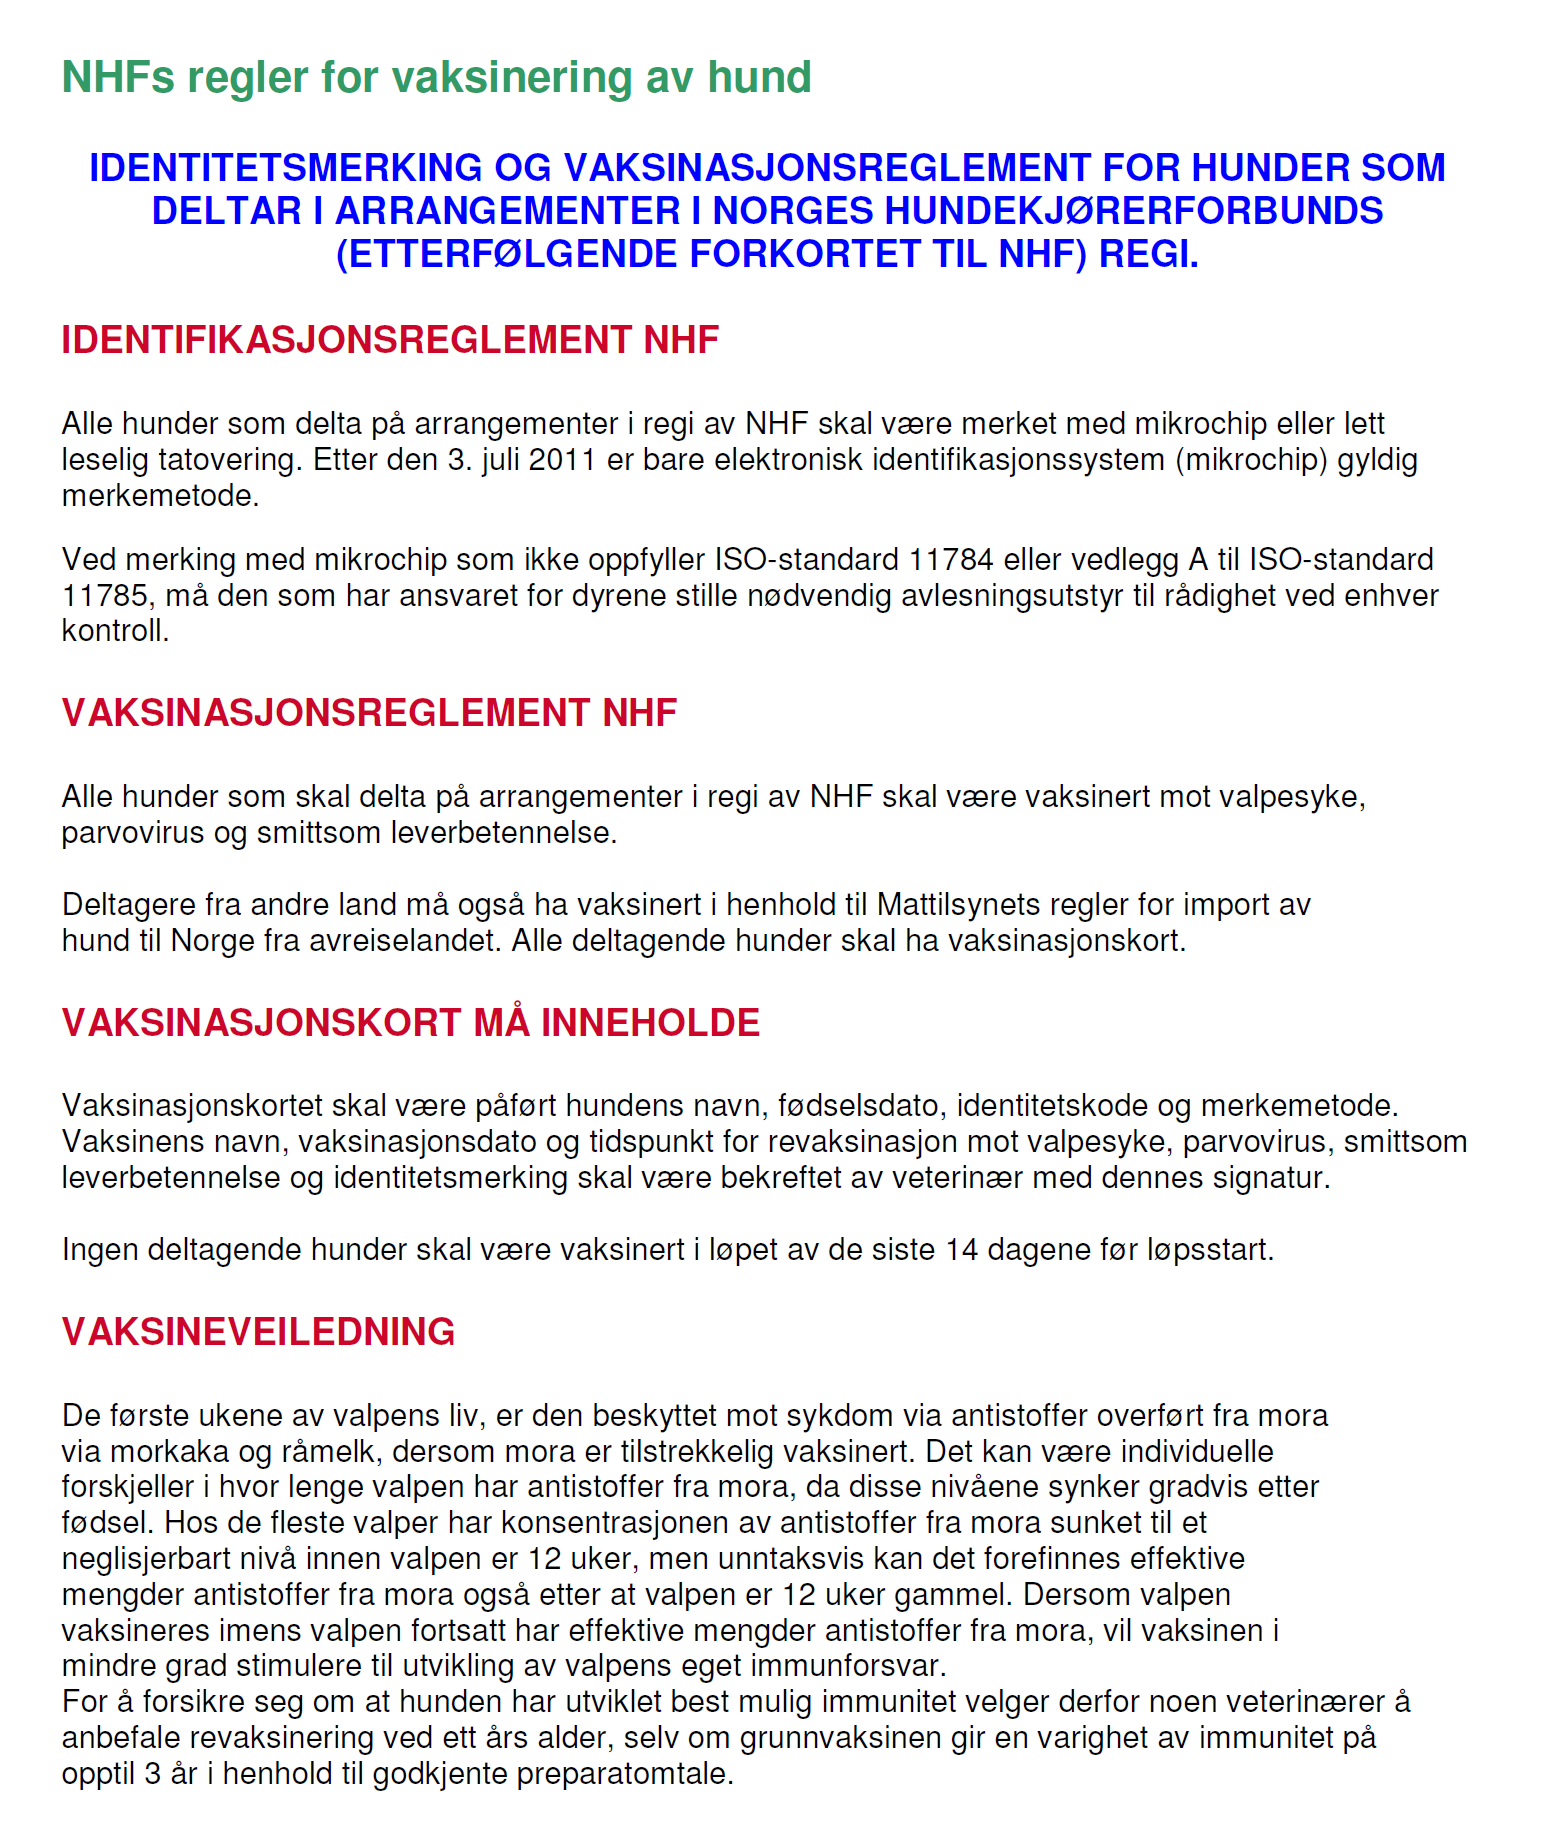 Vedlegg 3: NHF s reglement for vaksinasjon av hund Vedtatt